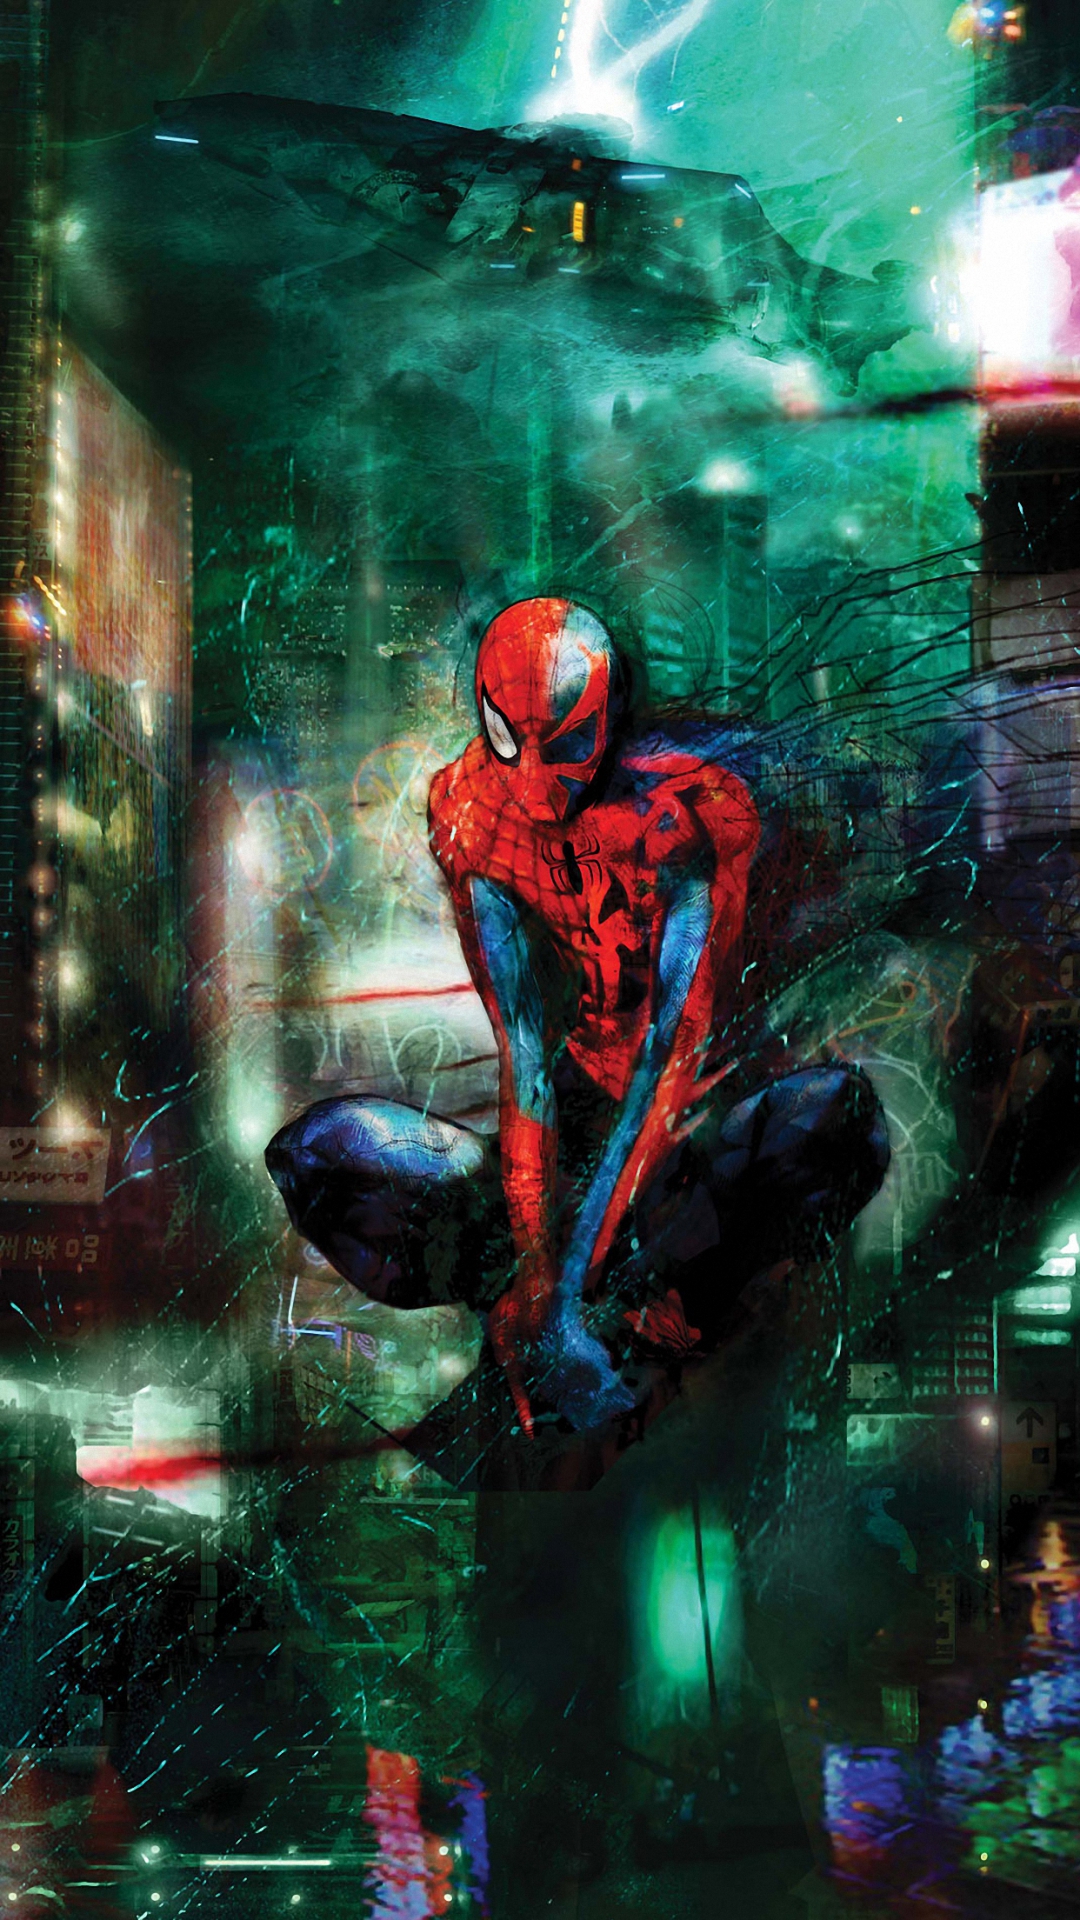 spiderman fondo de pantalla,superhéroe,juego de acción y aventura,personaje de ficción,hombre araña